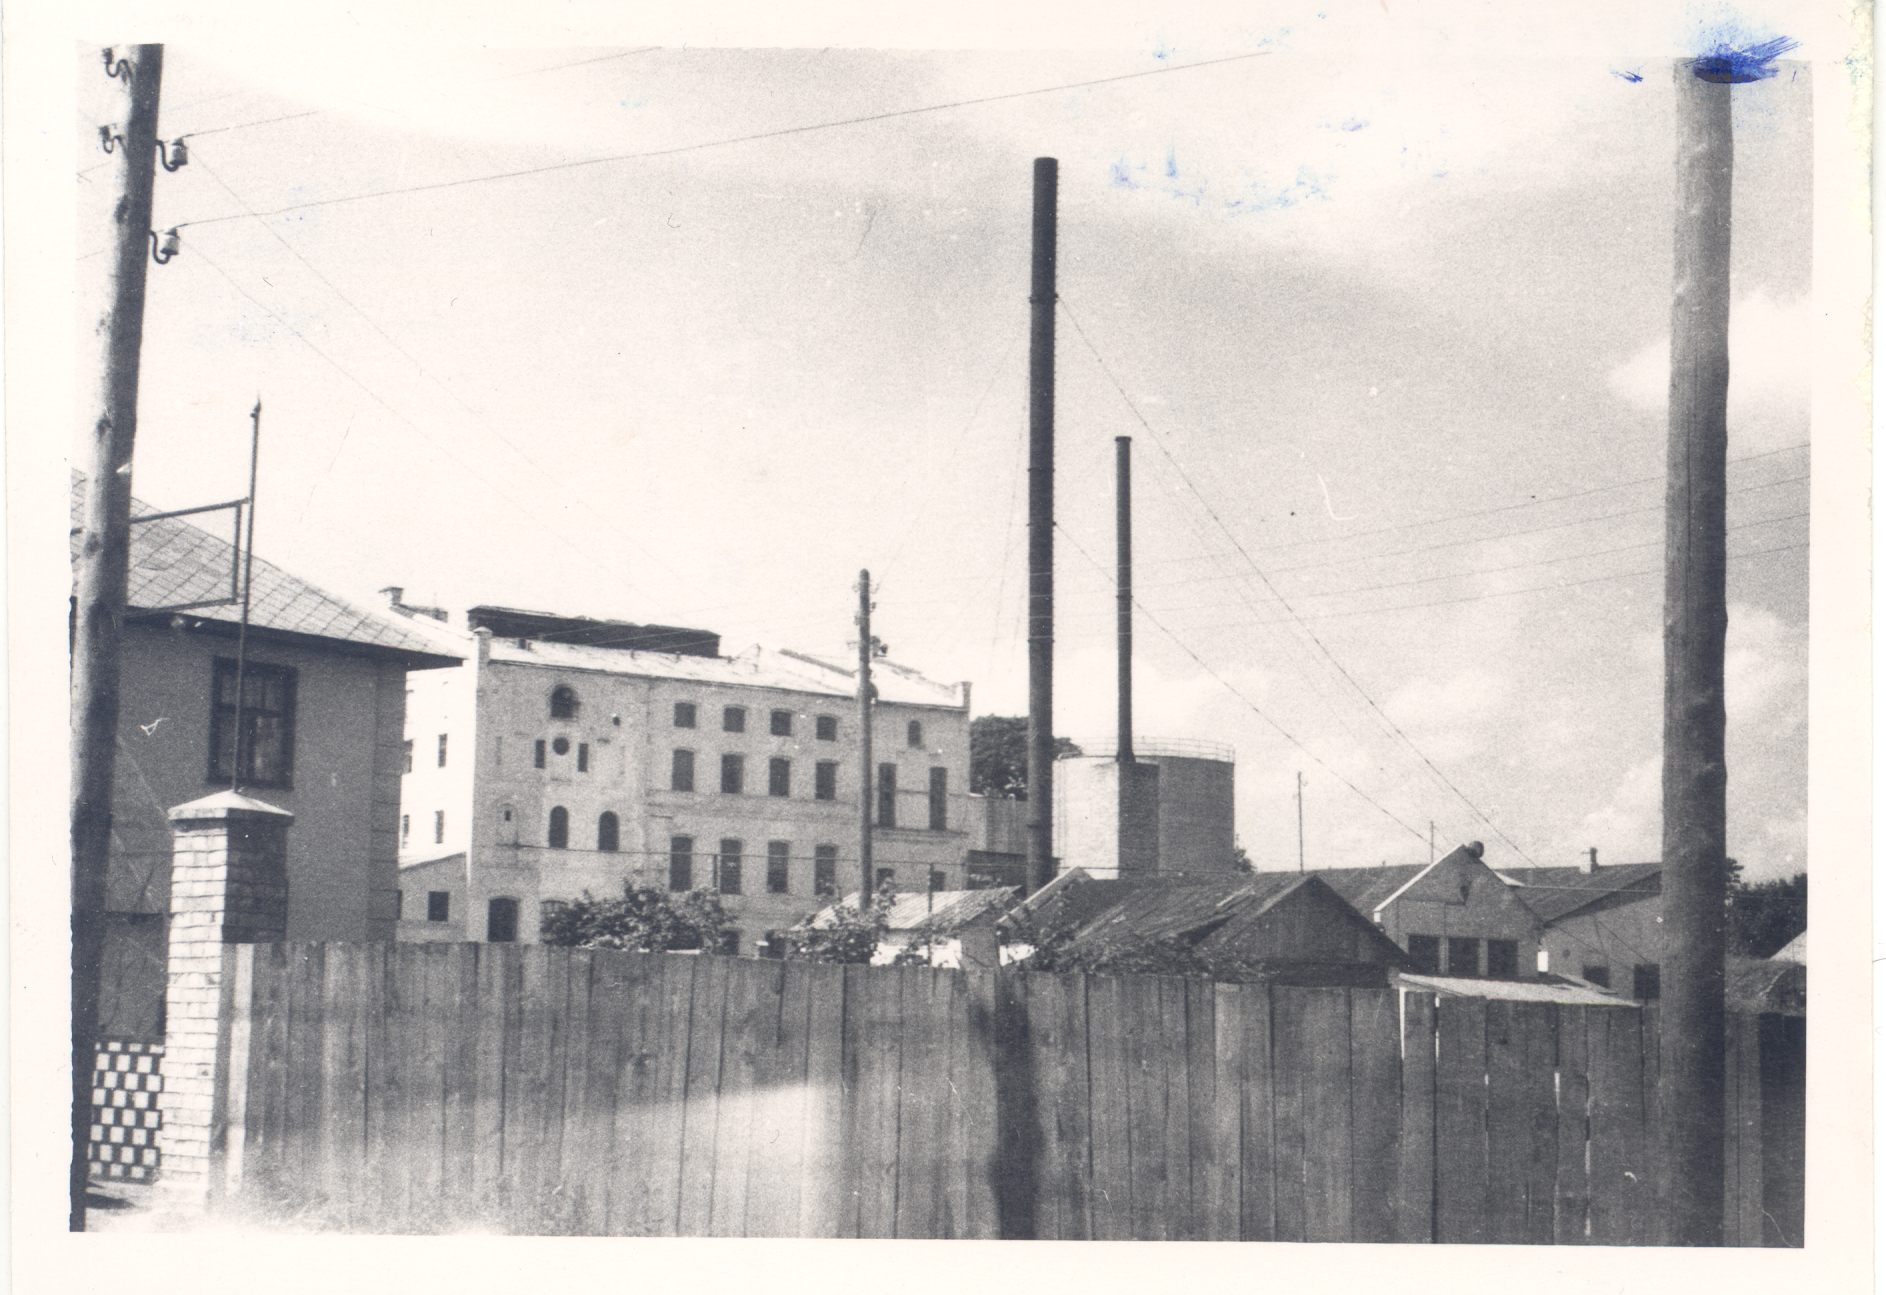 Kalkuni finite factory in 1961